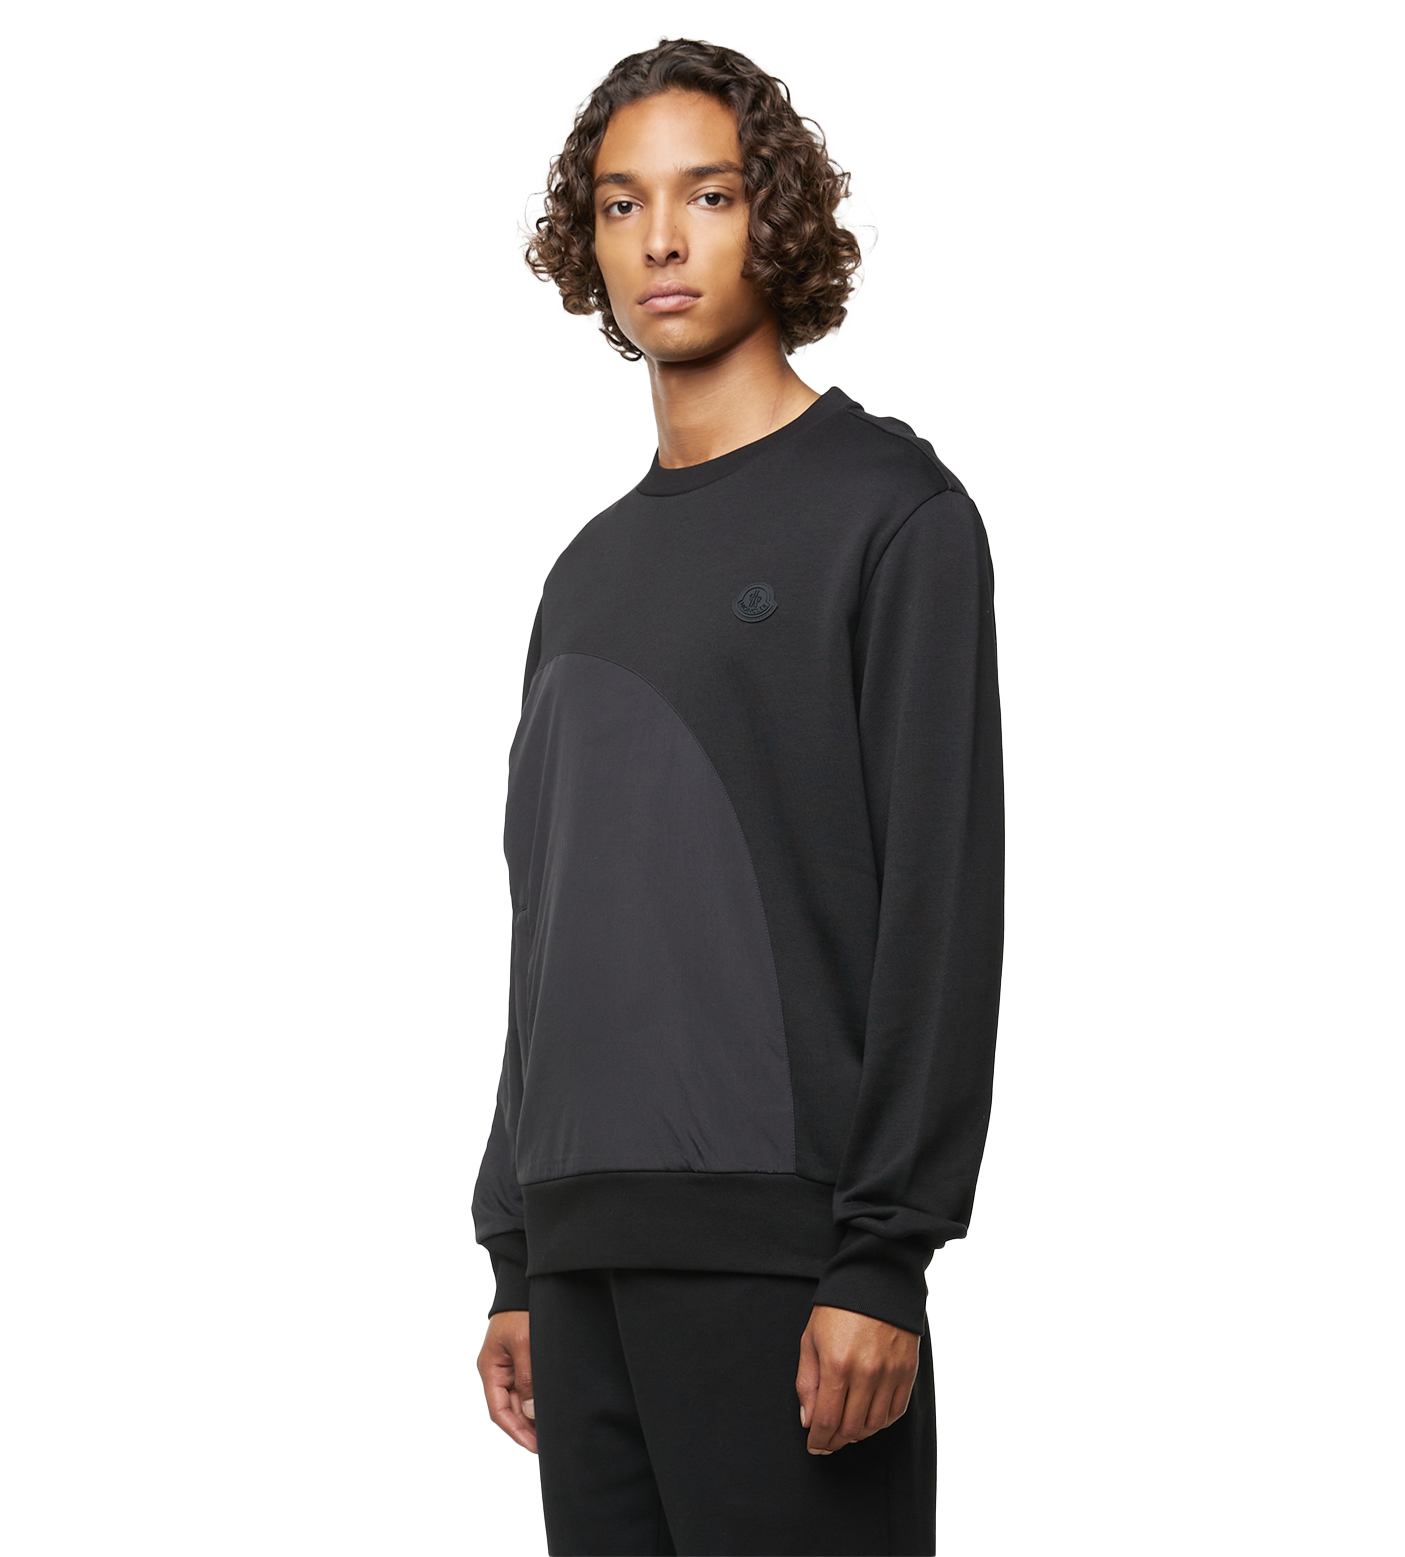 Double Textured Sweatshirt Black